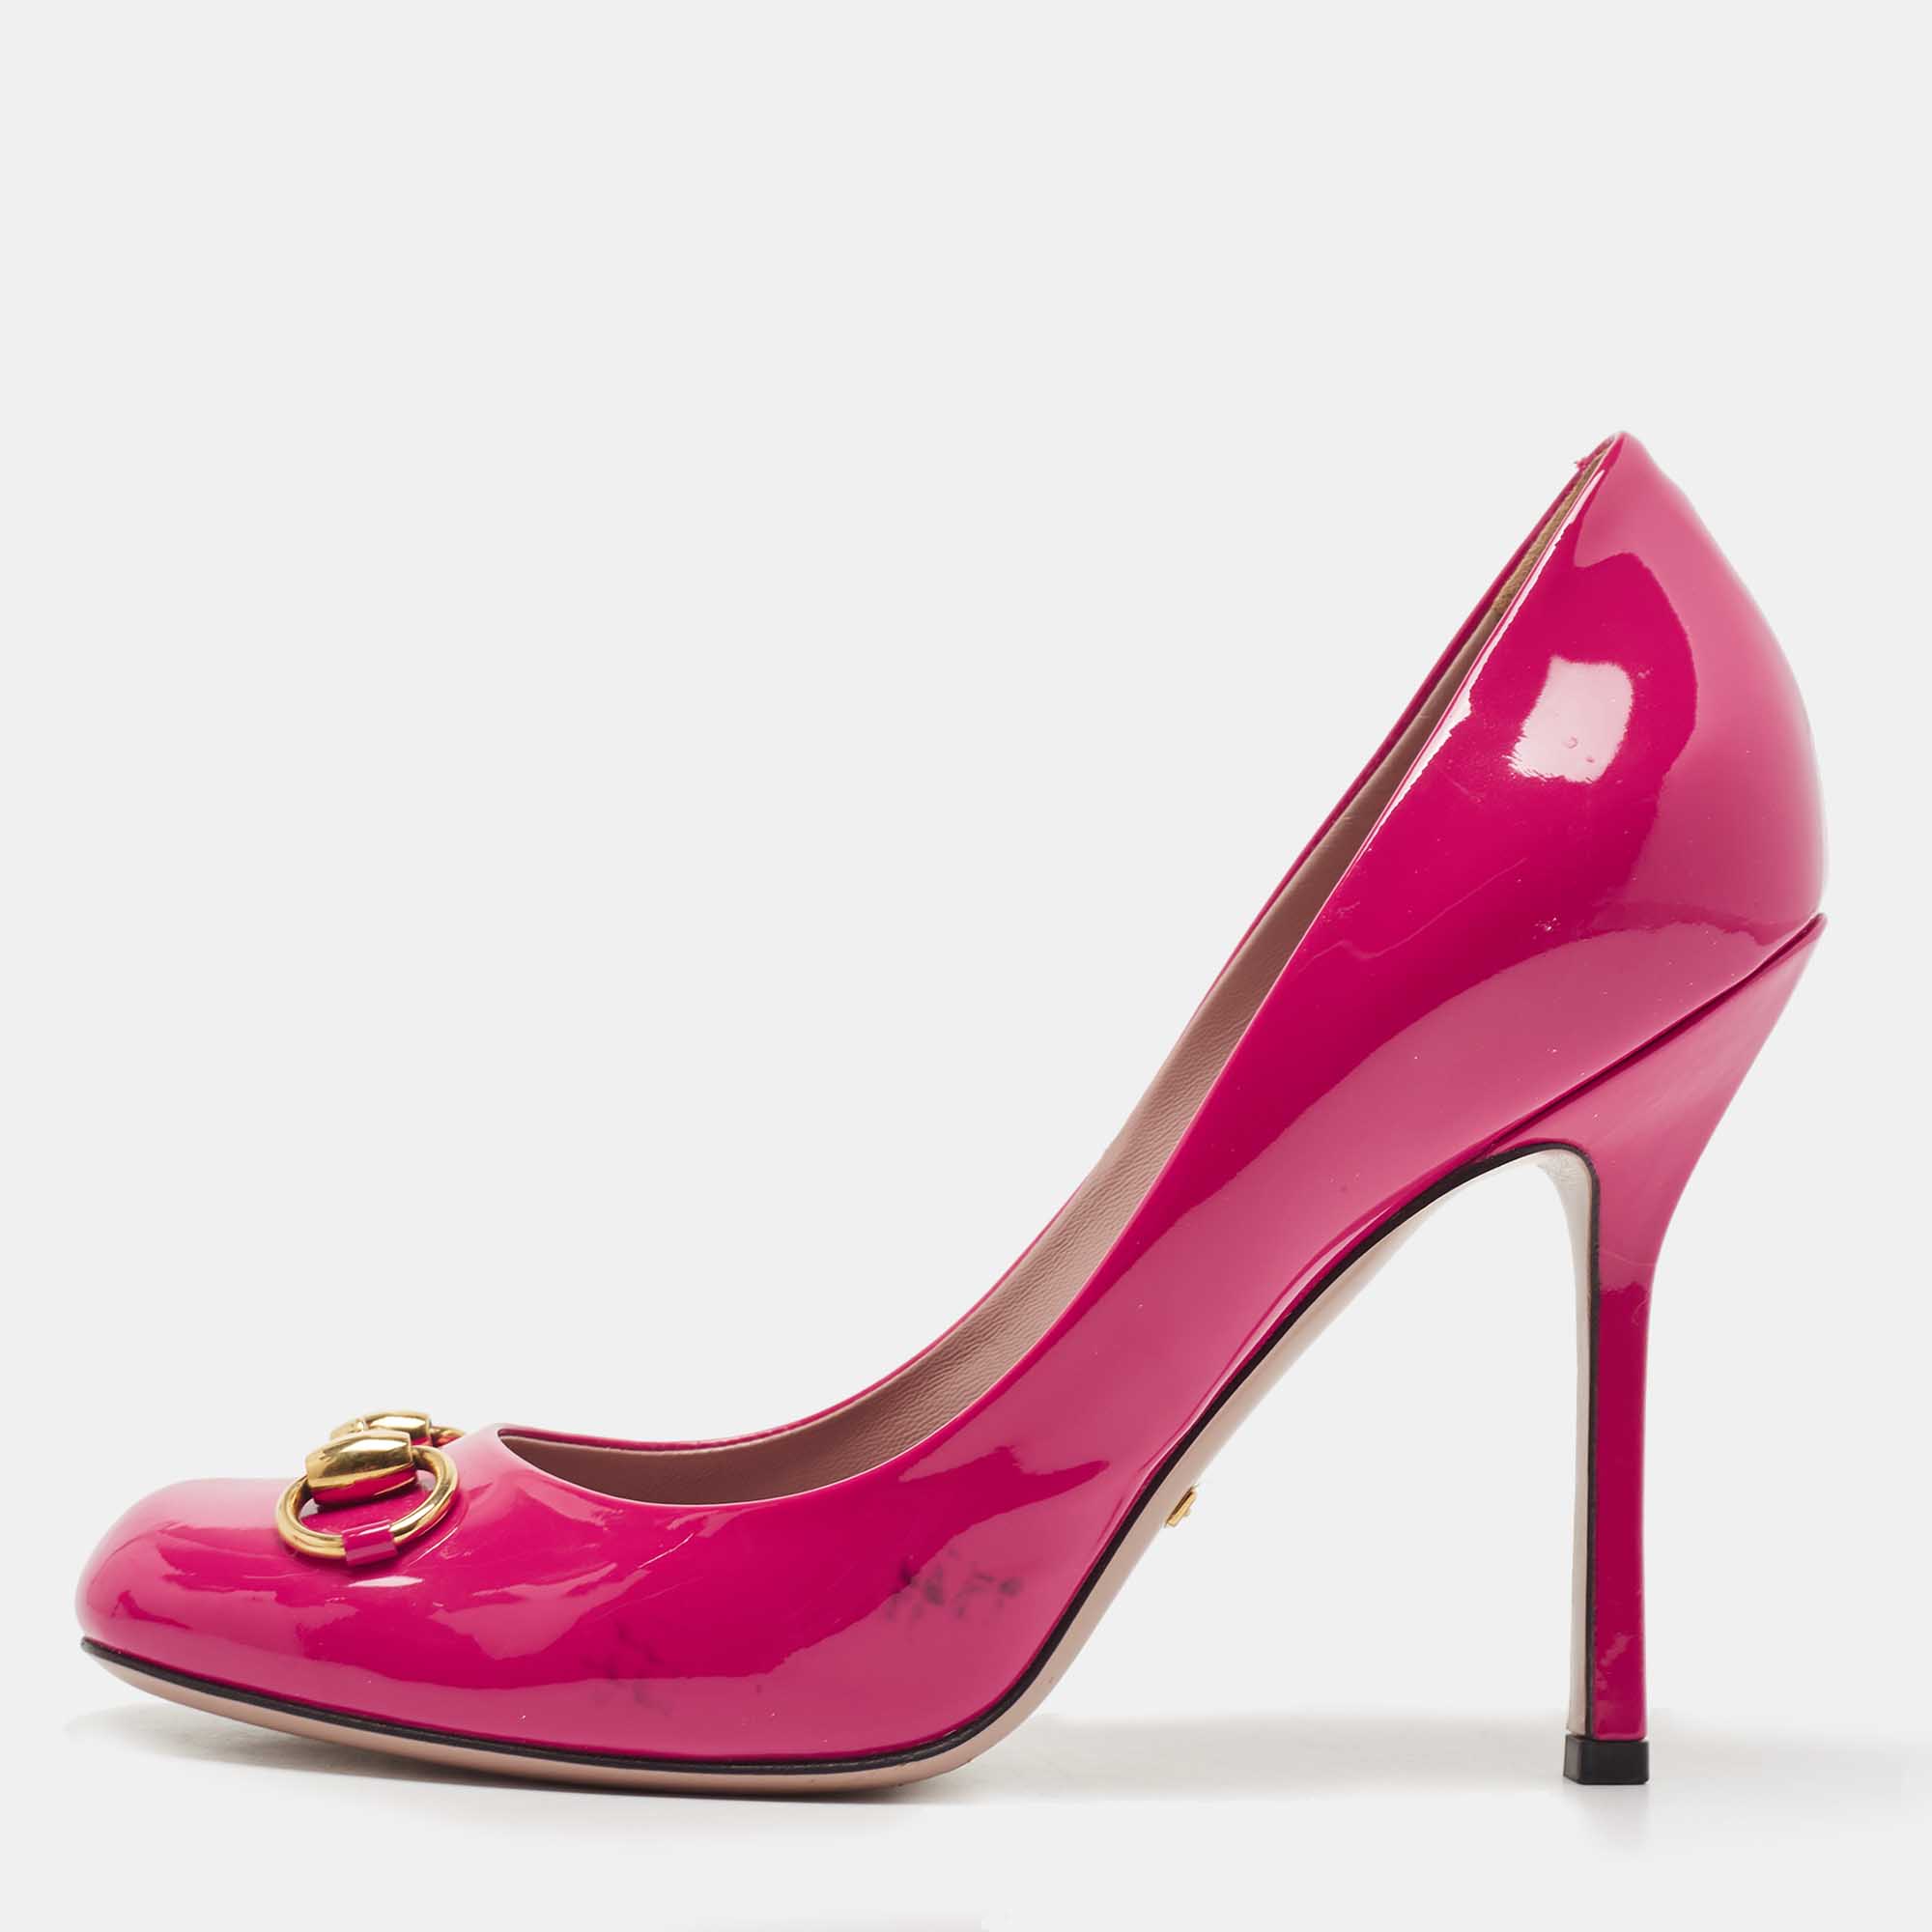 Gucci Pink Patent Leather Jolene Horsebit Pumps Size 38.5